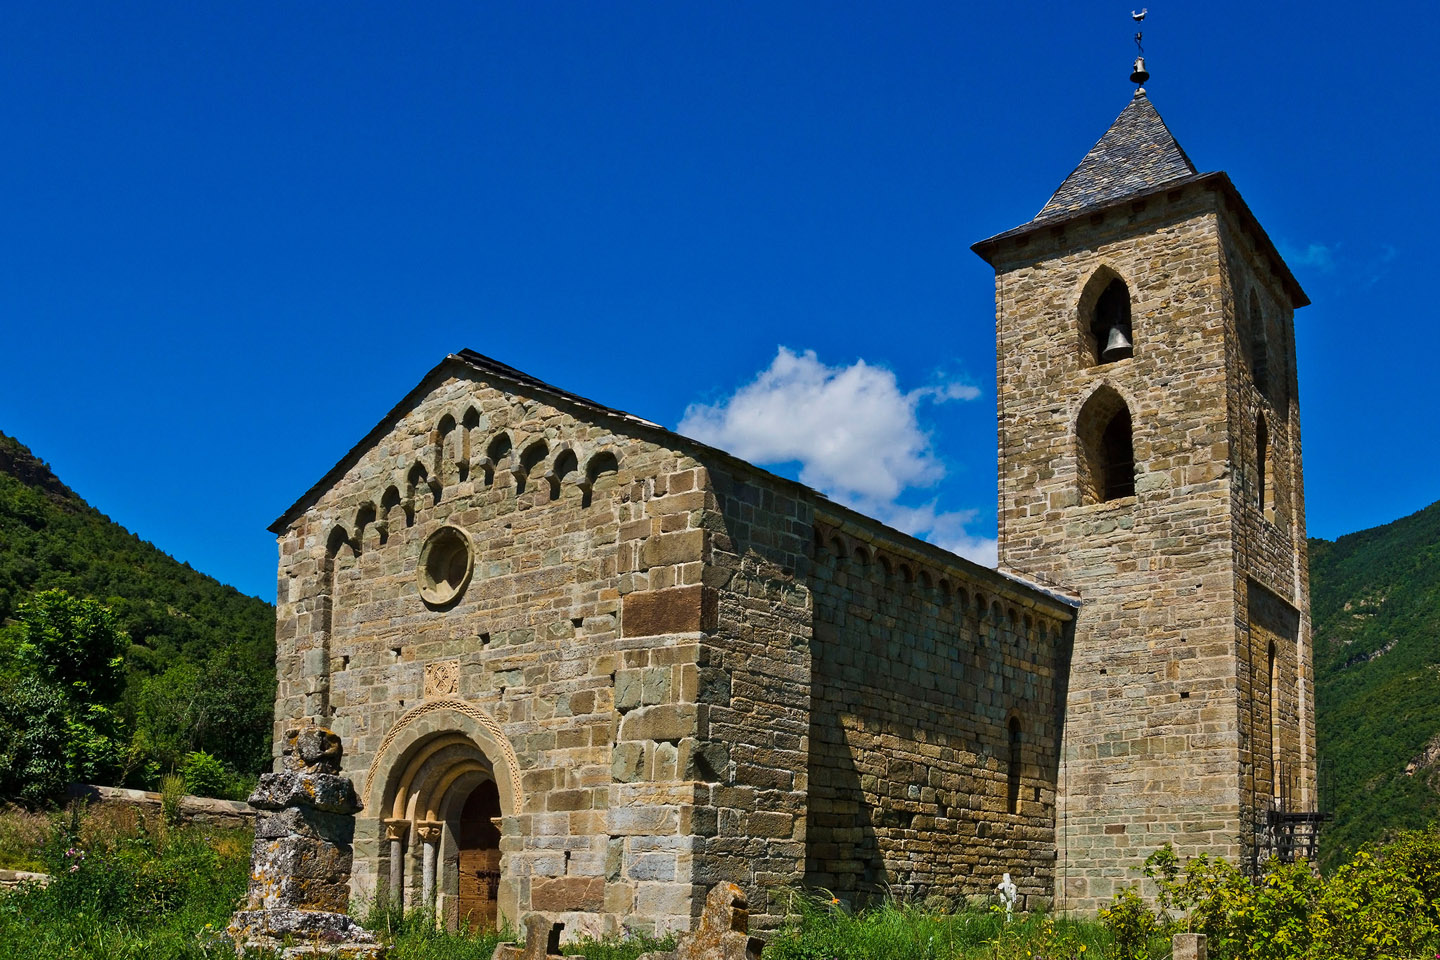 En el Valle de Boí (Lérida), hay ocho iglesias (las de Sant Climent y Santa Maria de Taüll y las de Coll, Barruera, Durro, Boí, Erill la Vall y Cardet) y una ermita (Sant Quirc).